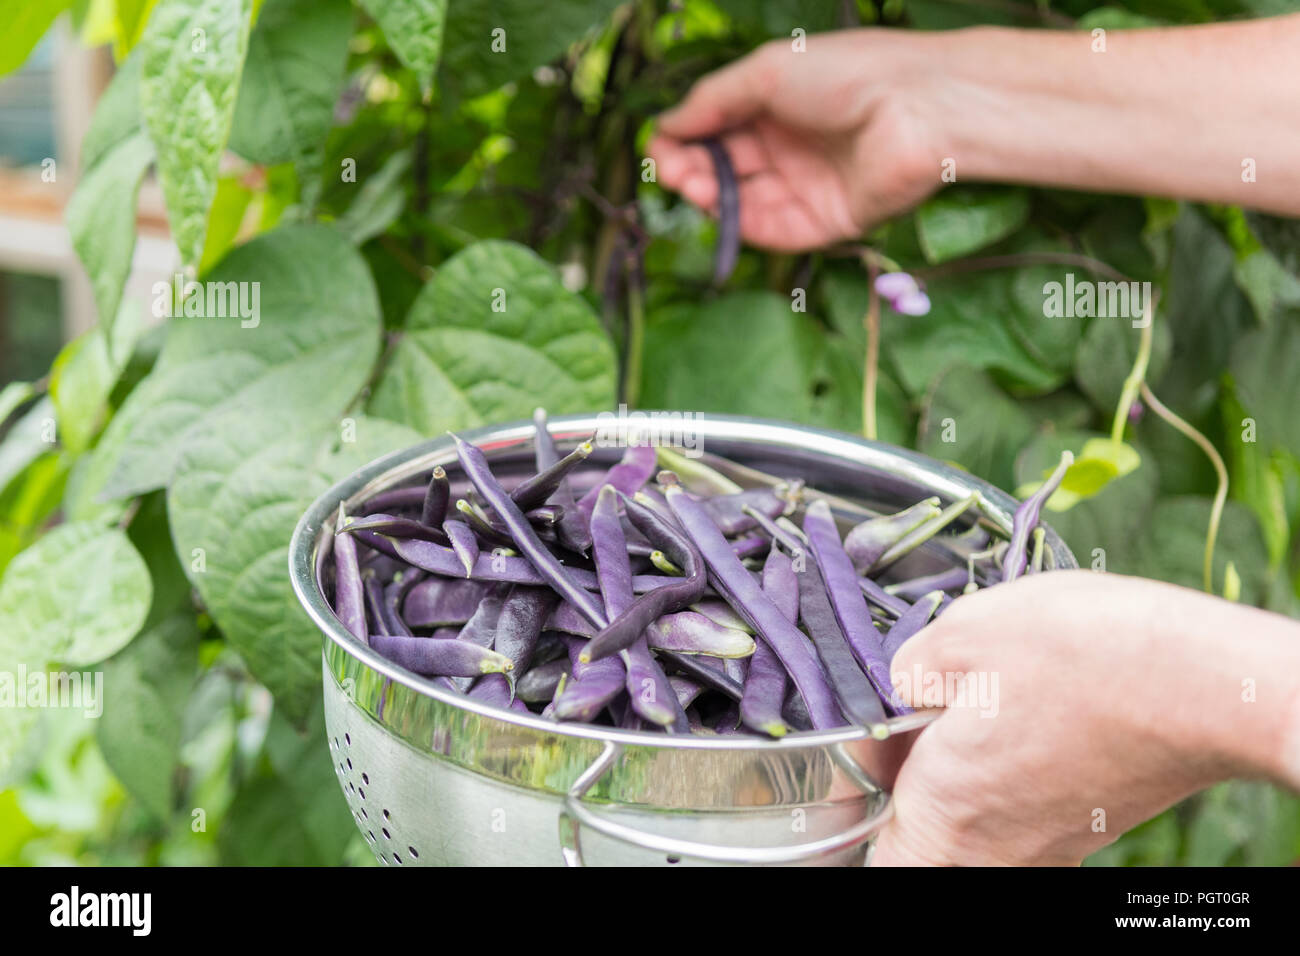 Escalade picking beans français cosse violette - phaseolus vulgaris - de garden - UK Banque D'Images